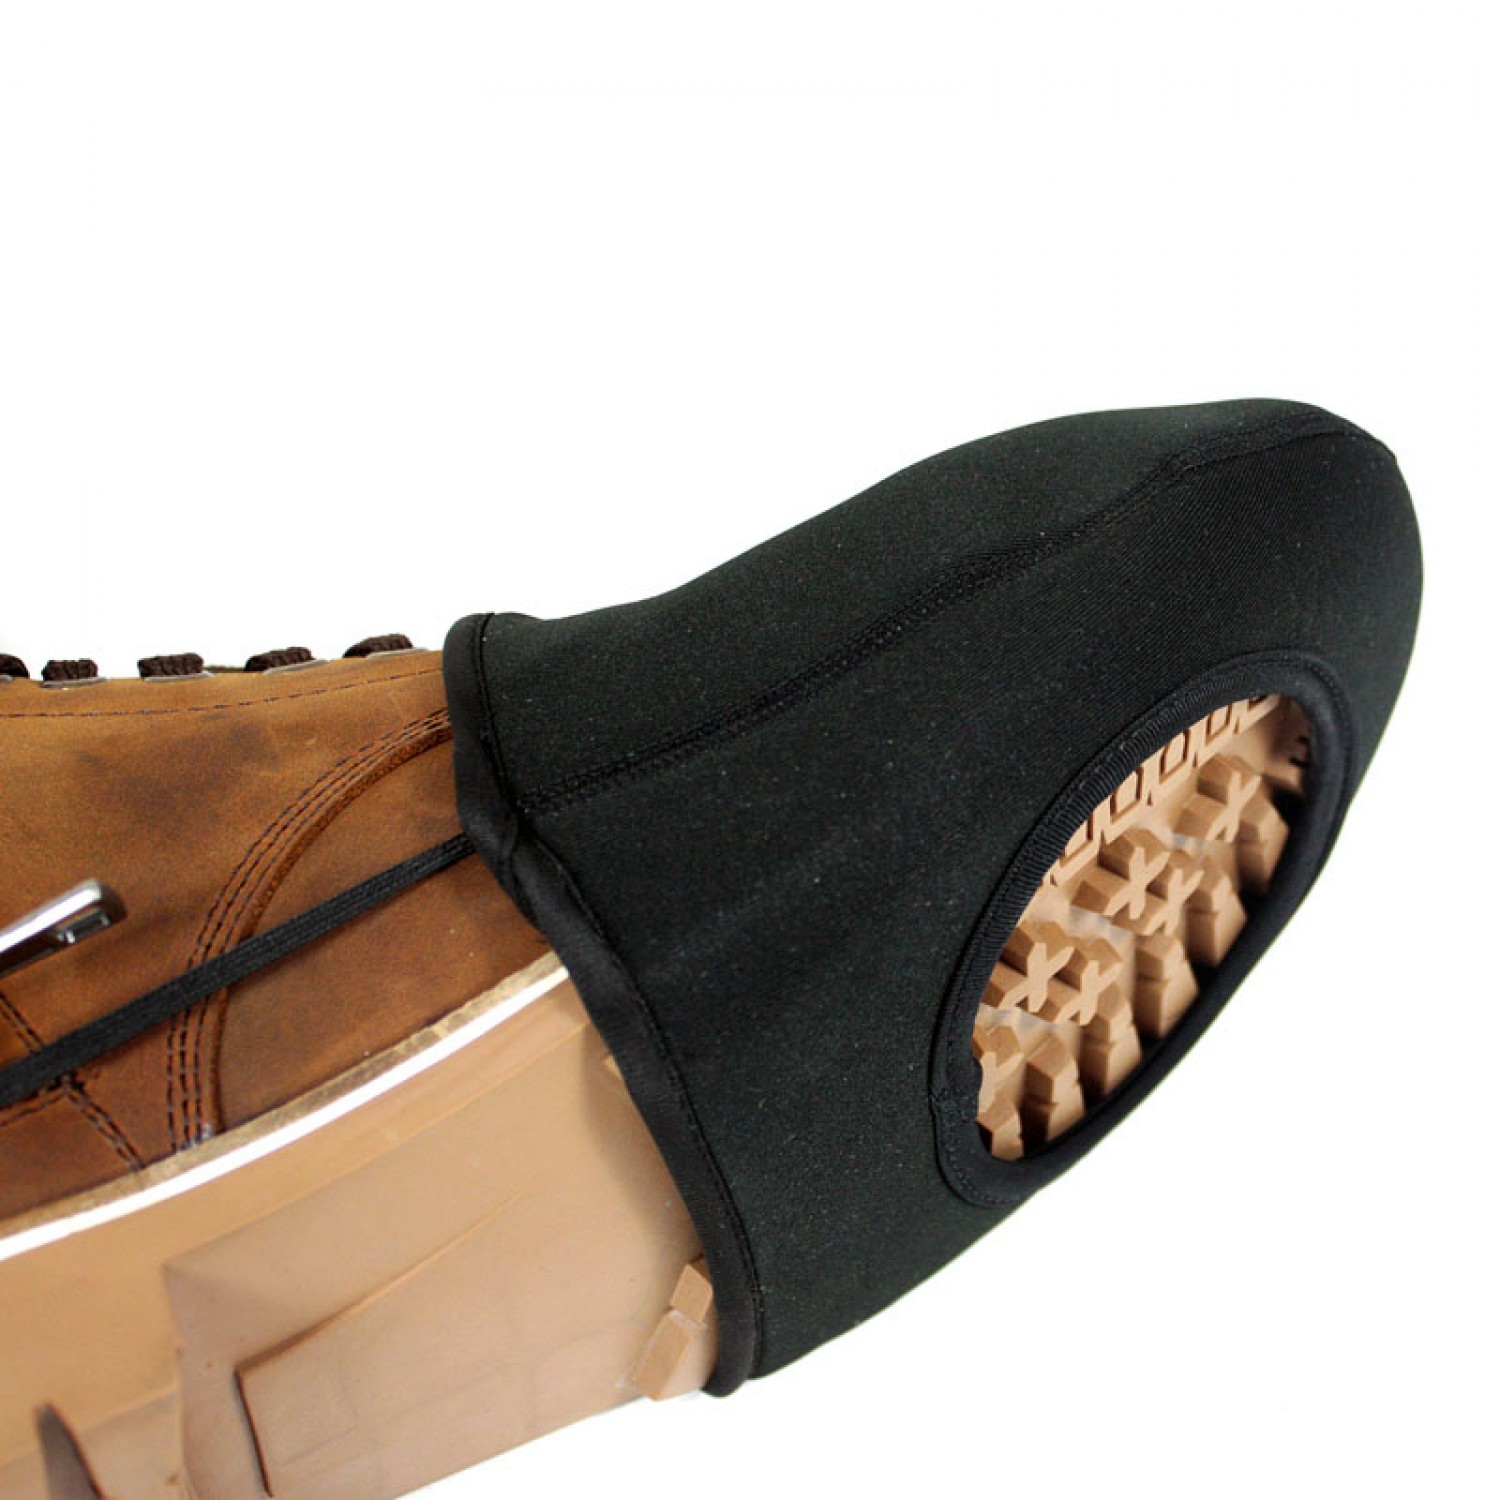 Dioche Couvre-chaussures de moto Couvre-chaussures à Engrenages, Housse de  Chaussure de Moto, Protège-bottes